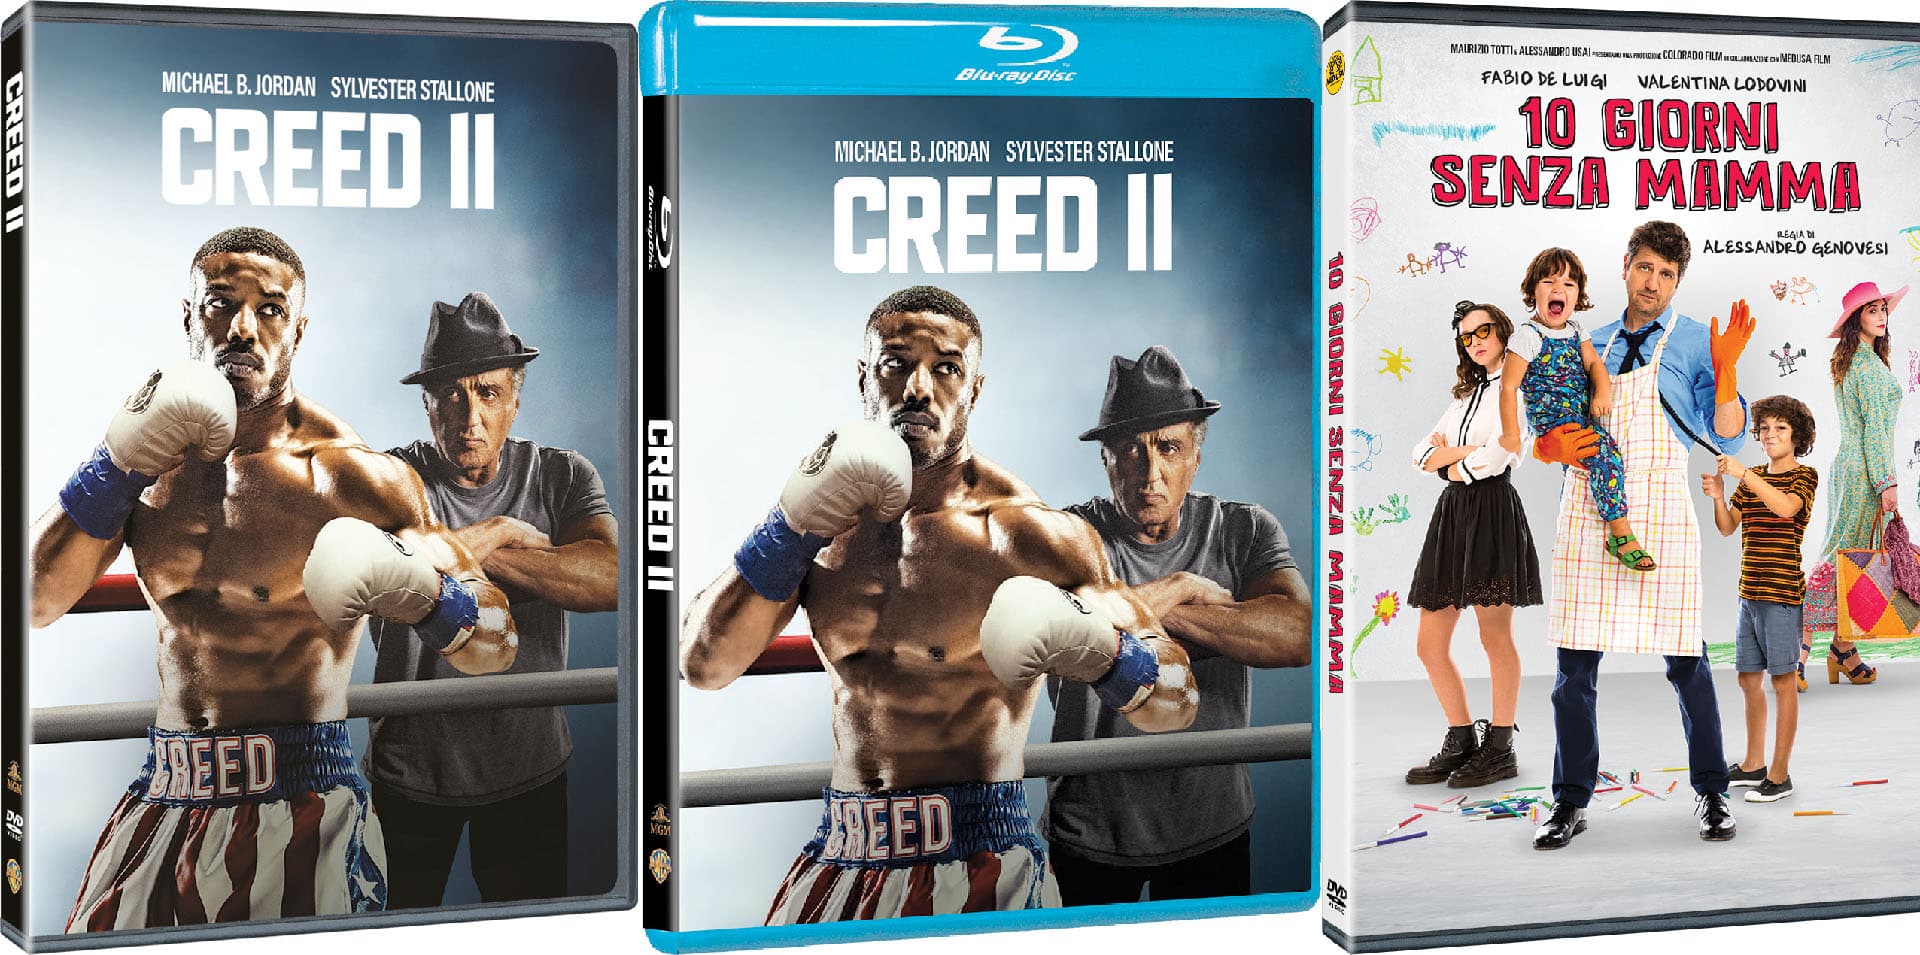 Creed II e le altre uscite Home Video Warner Bros. di maggio 2019